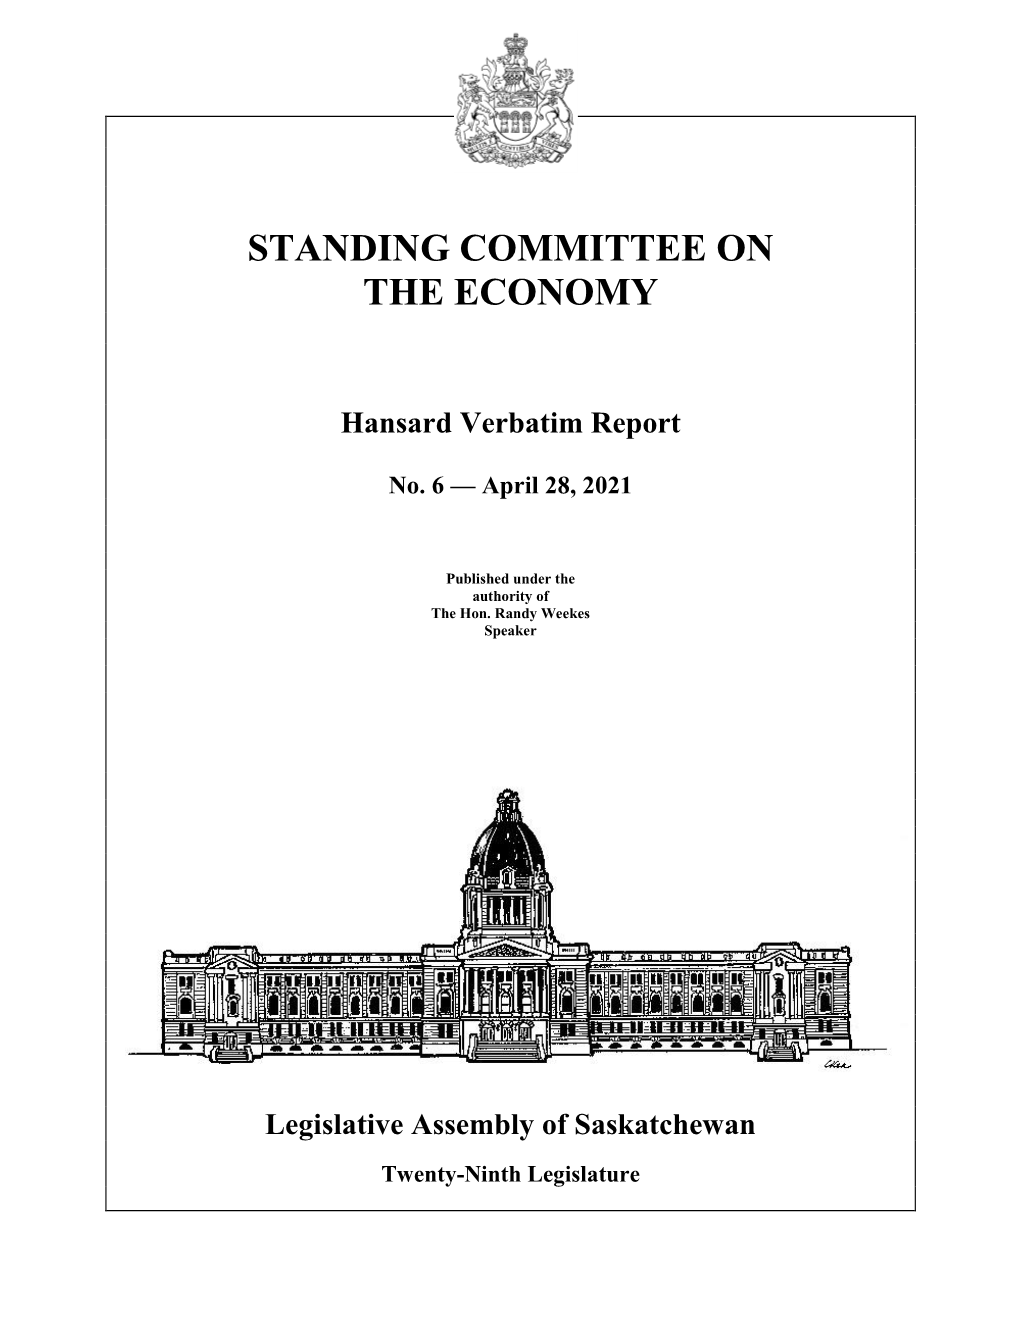 April 28, 2021 Economy Committee